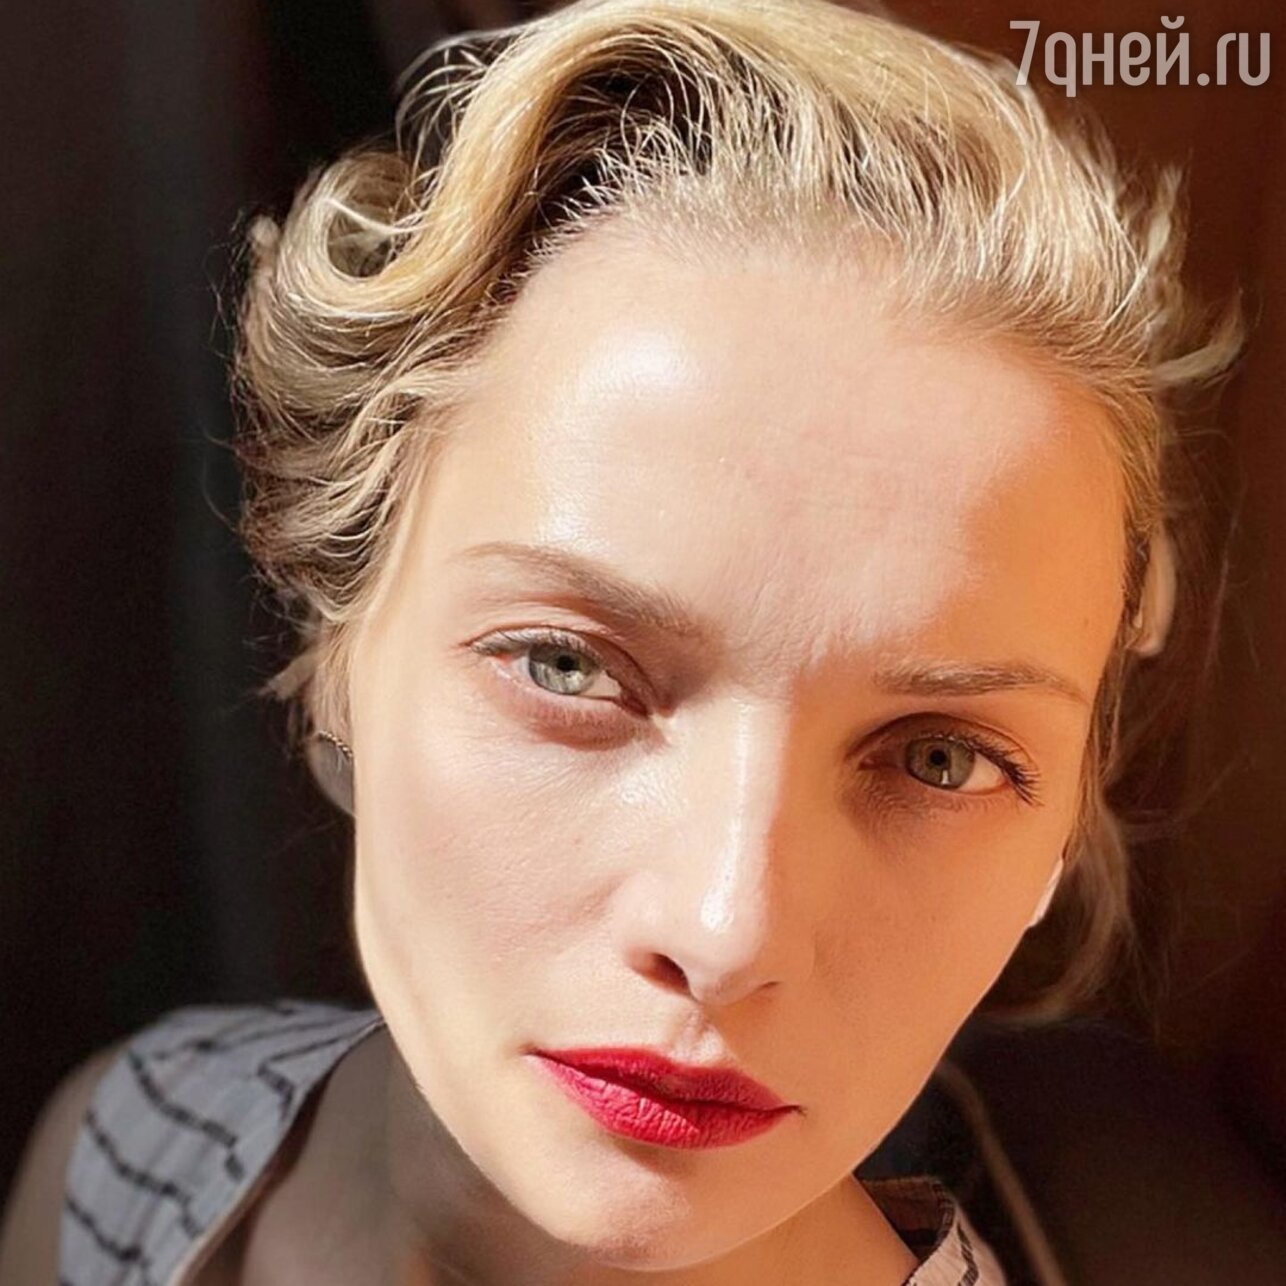 Екатерина Вилкова: «Испытываю зависть и злость к другим актрисам» - 7Дней.ру